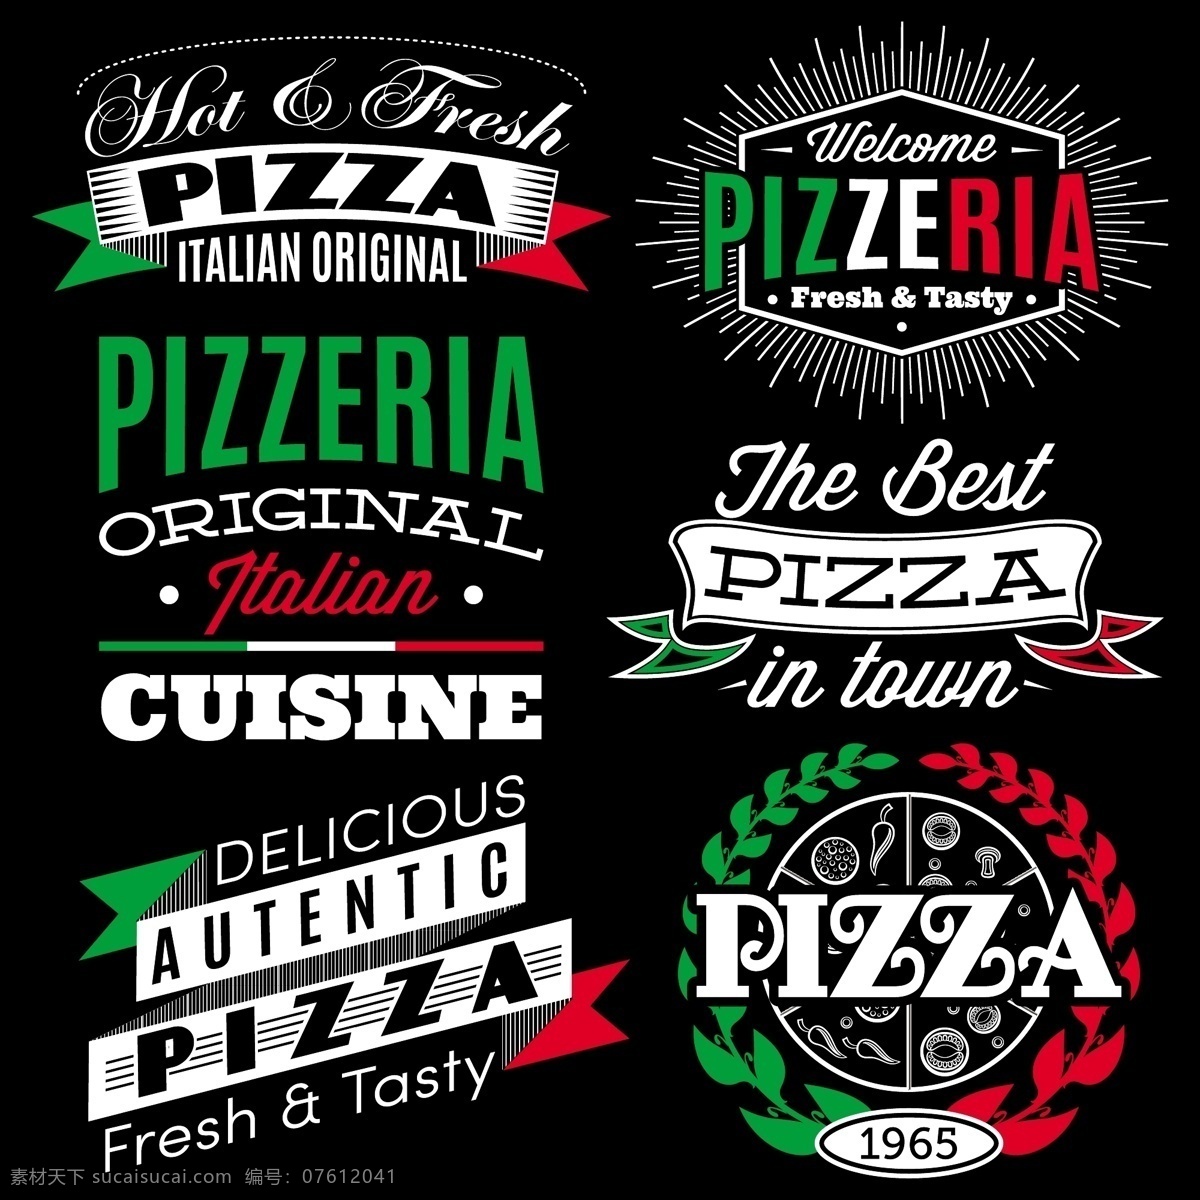 意大利 披萨 矢量 文字排版 矢量素材 设计素材 背景素材